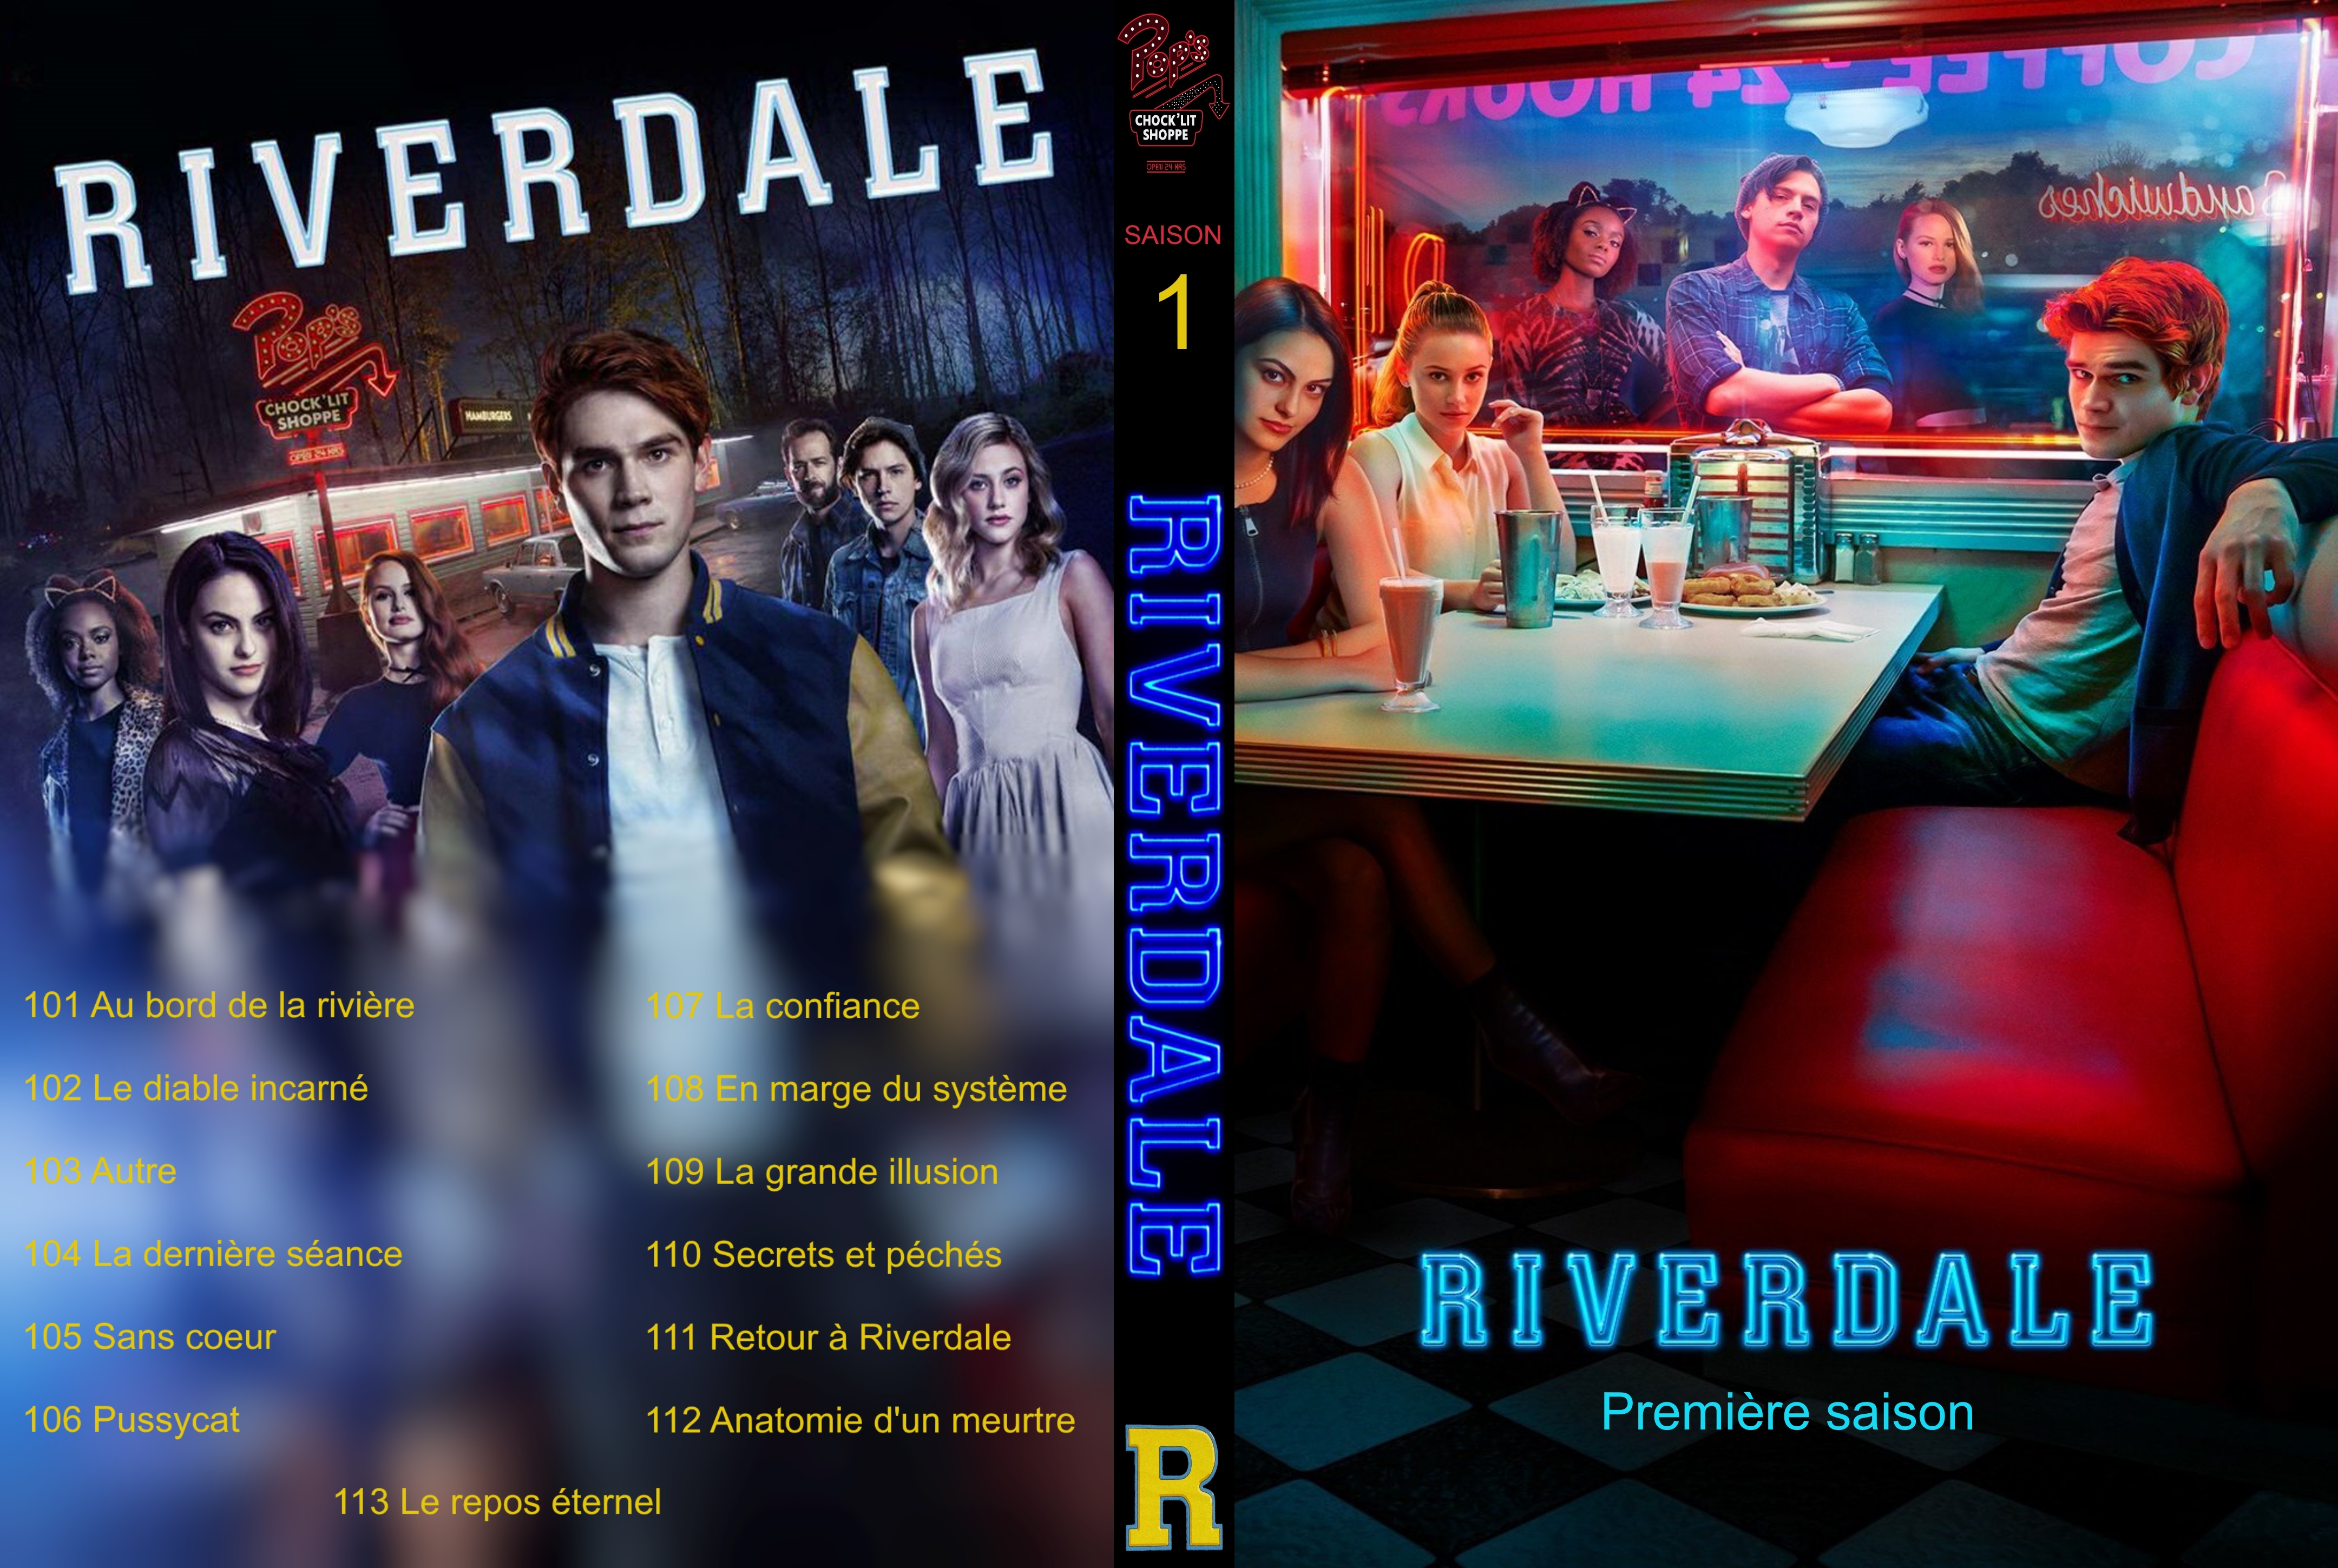 Jaquette DVD Riverdale Saison 1 custom